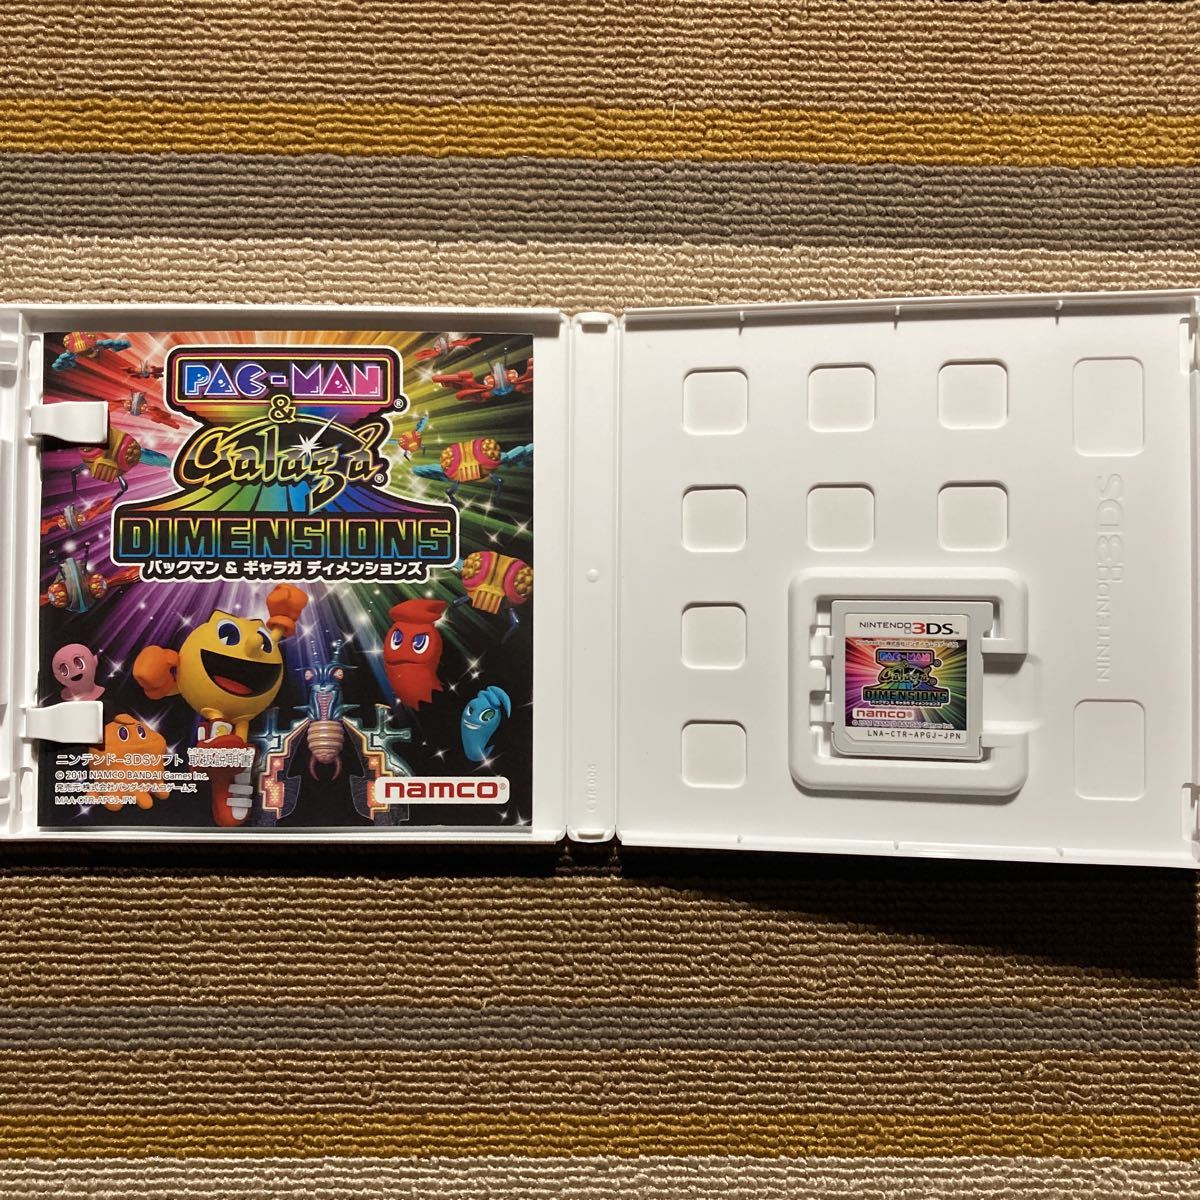 3DS パックマン&ギャラガ ディメンションズ